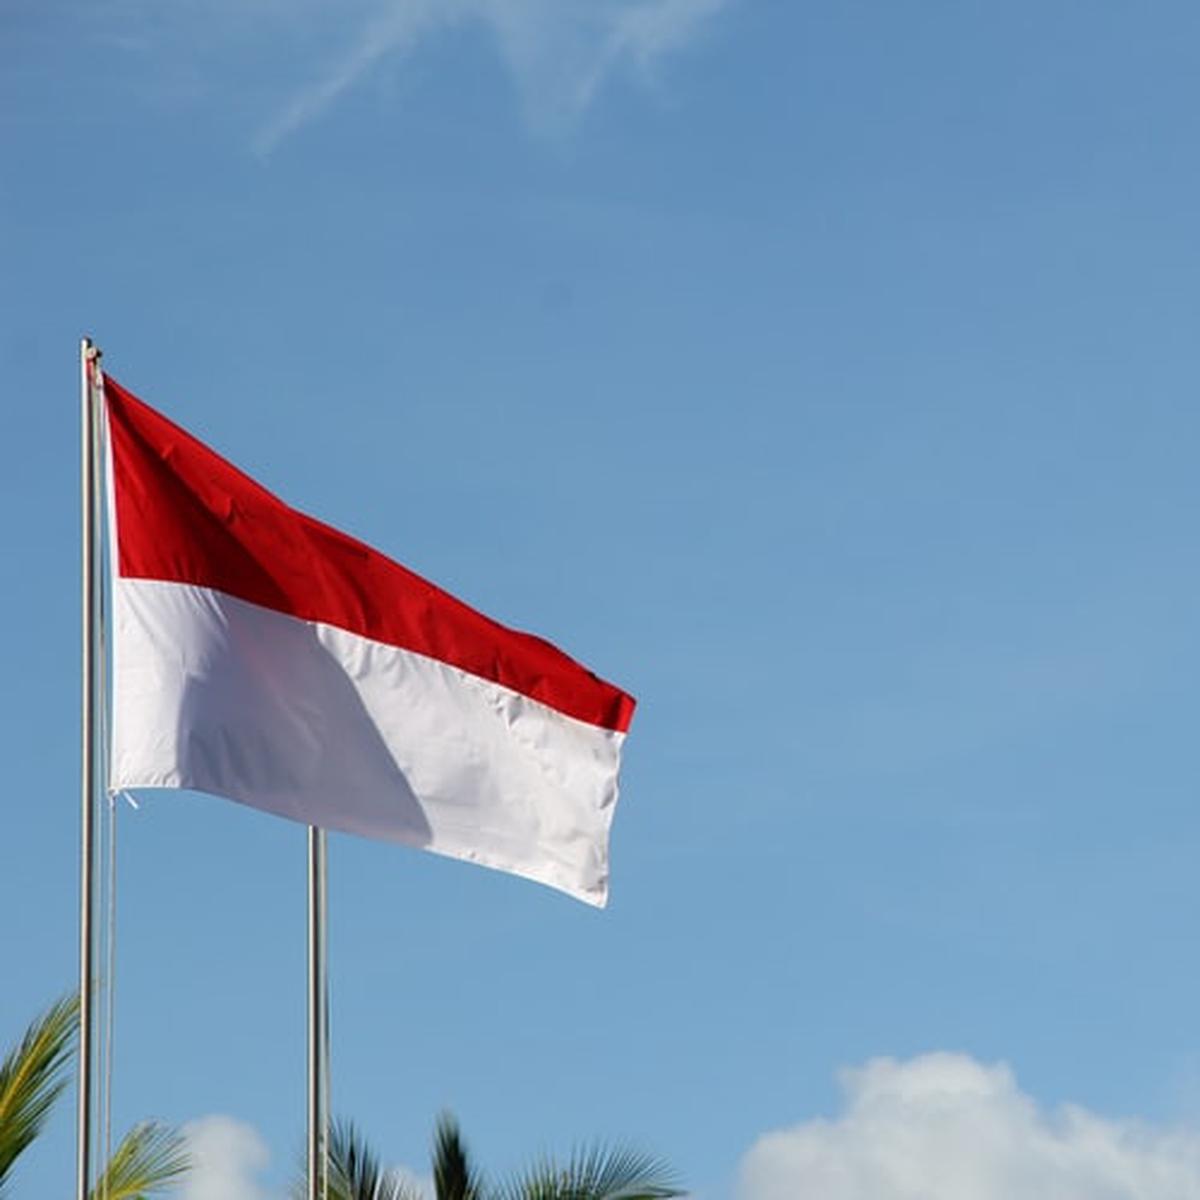 Merah dan bagaimana penjajahan raya lagu masa sekarang dan situasi indonesia putih menyanyikan bendera pada mengibarkan perbedaan √ Tata